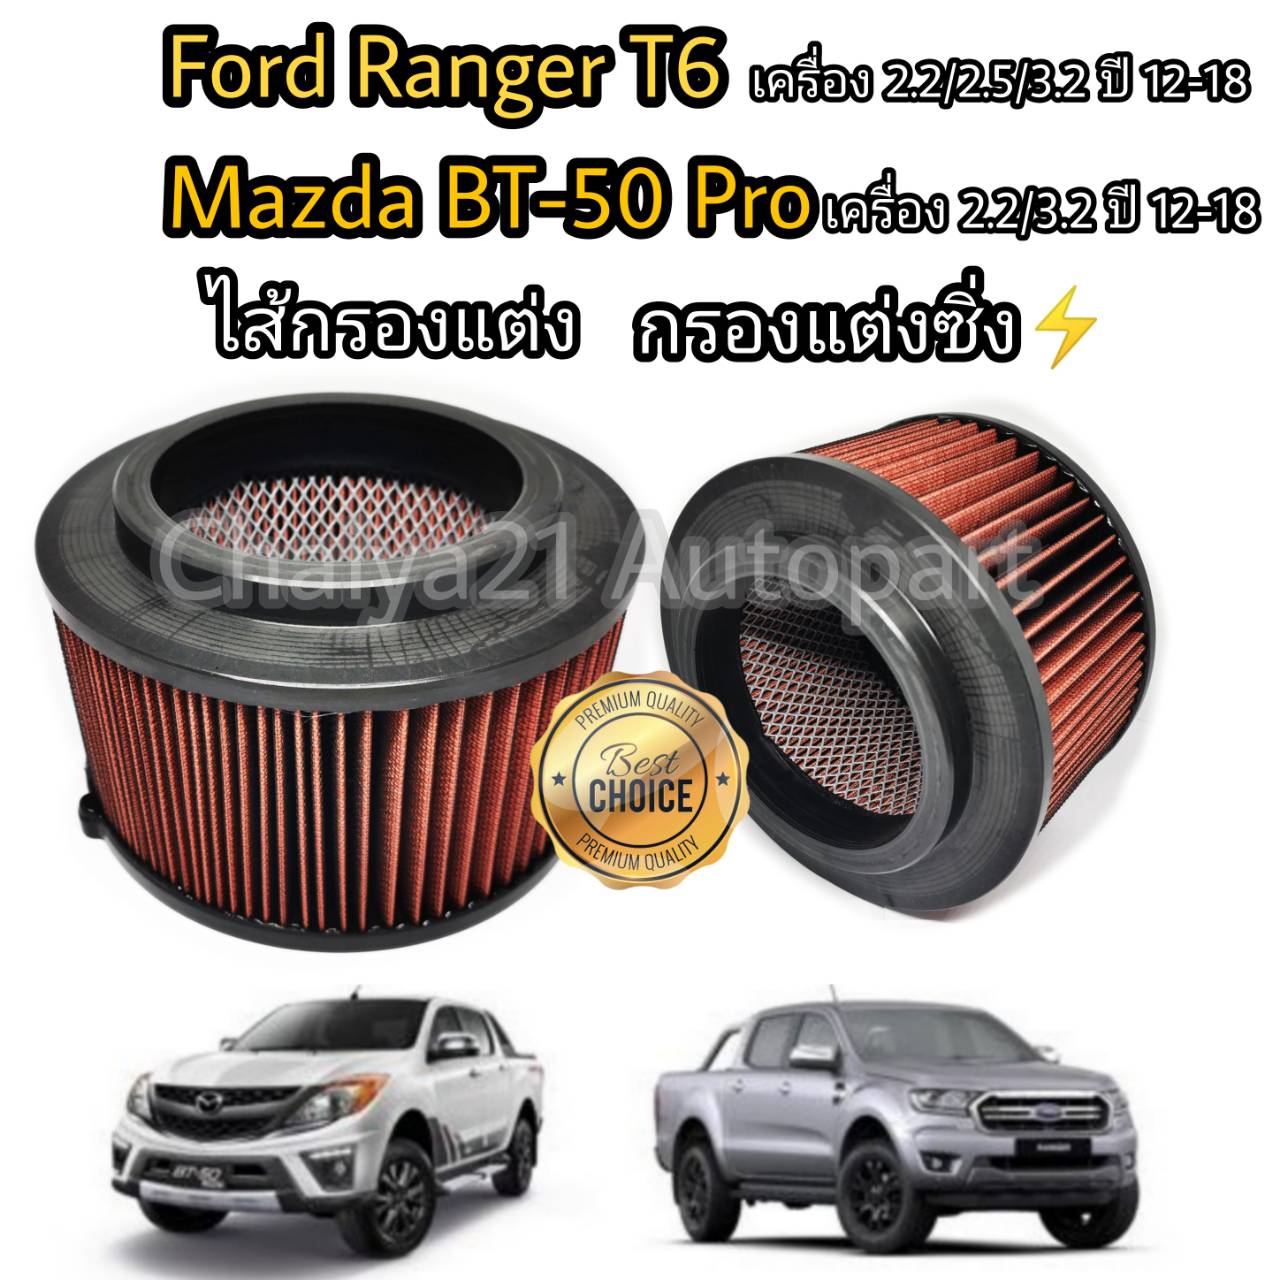 ไส้กรองแต่ง กรองอากาศ กรองเปียก (coco) Ford Ranger T6 Mazda BT-50 Pro ฟอร์ด เรนเจอร์ มาสด้า บีที-50 โปร ปี 2012-2020